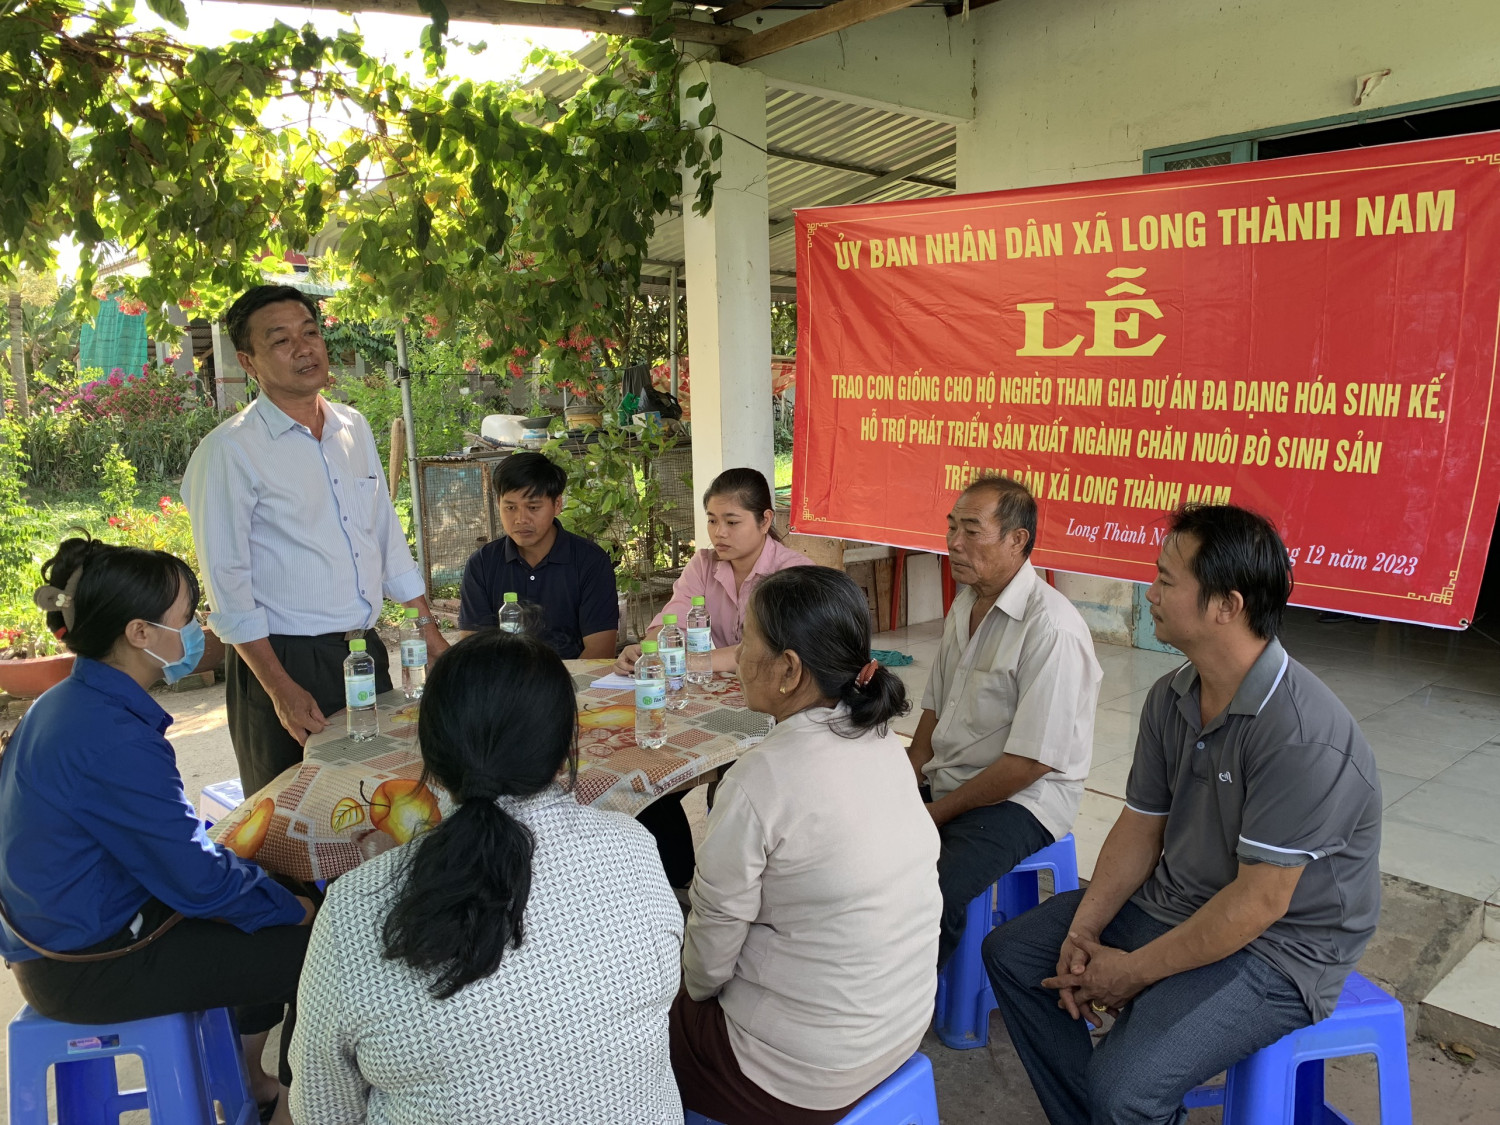 Ông Huỳnh Văn Long - PCT UBND xã Long Thành Nam phát biểu tại lễ trao bò cho các hộ dân